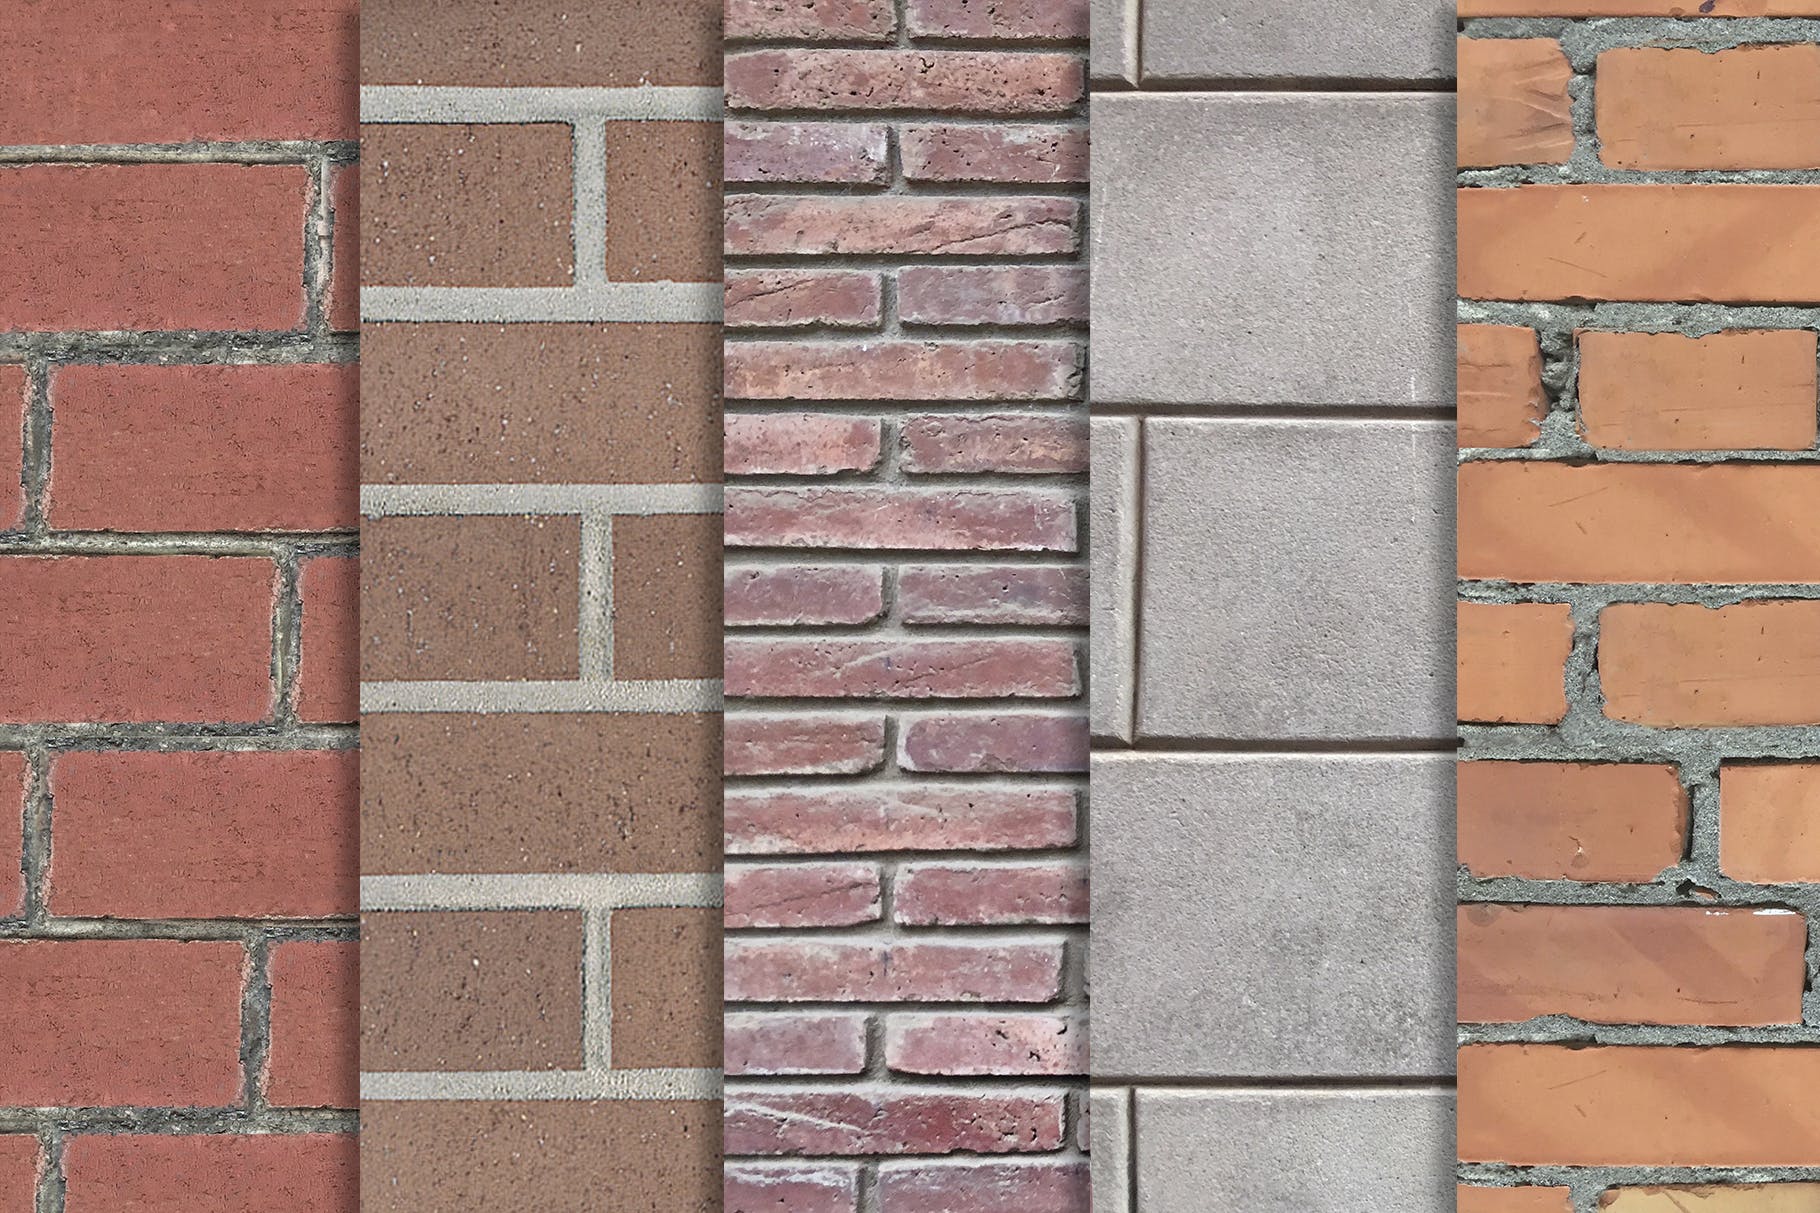 10张砖墙纹理高清第一素材精选背景素材v3 Brick Wall Textures x10 Vol 3插图(1)